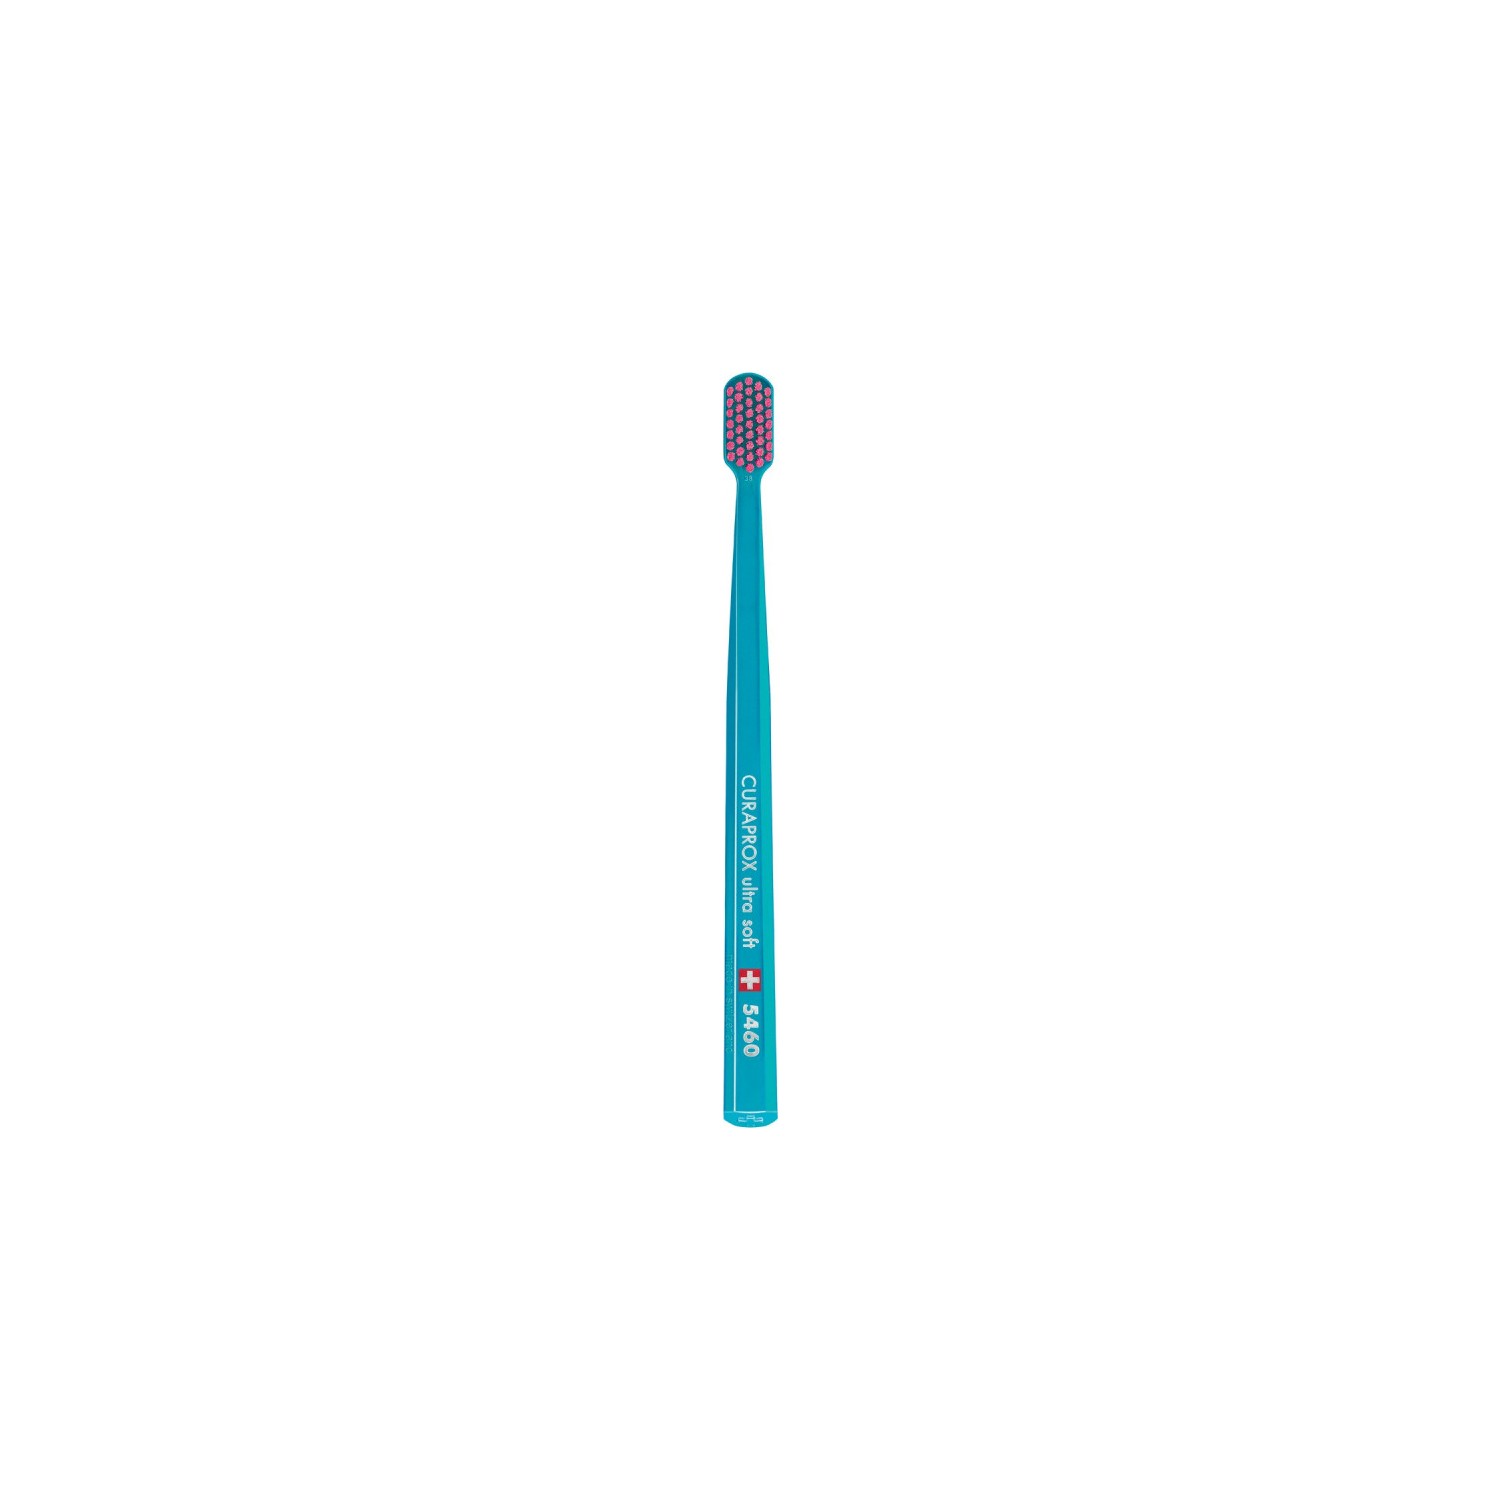 Зубная щетка Curaprox ультрамягкая CS5460, голубой household electric toothbrush usb charging soft hair waterproof wave vibration toothbrush